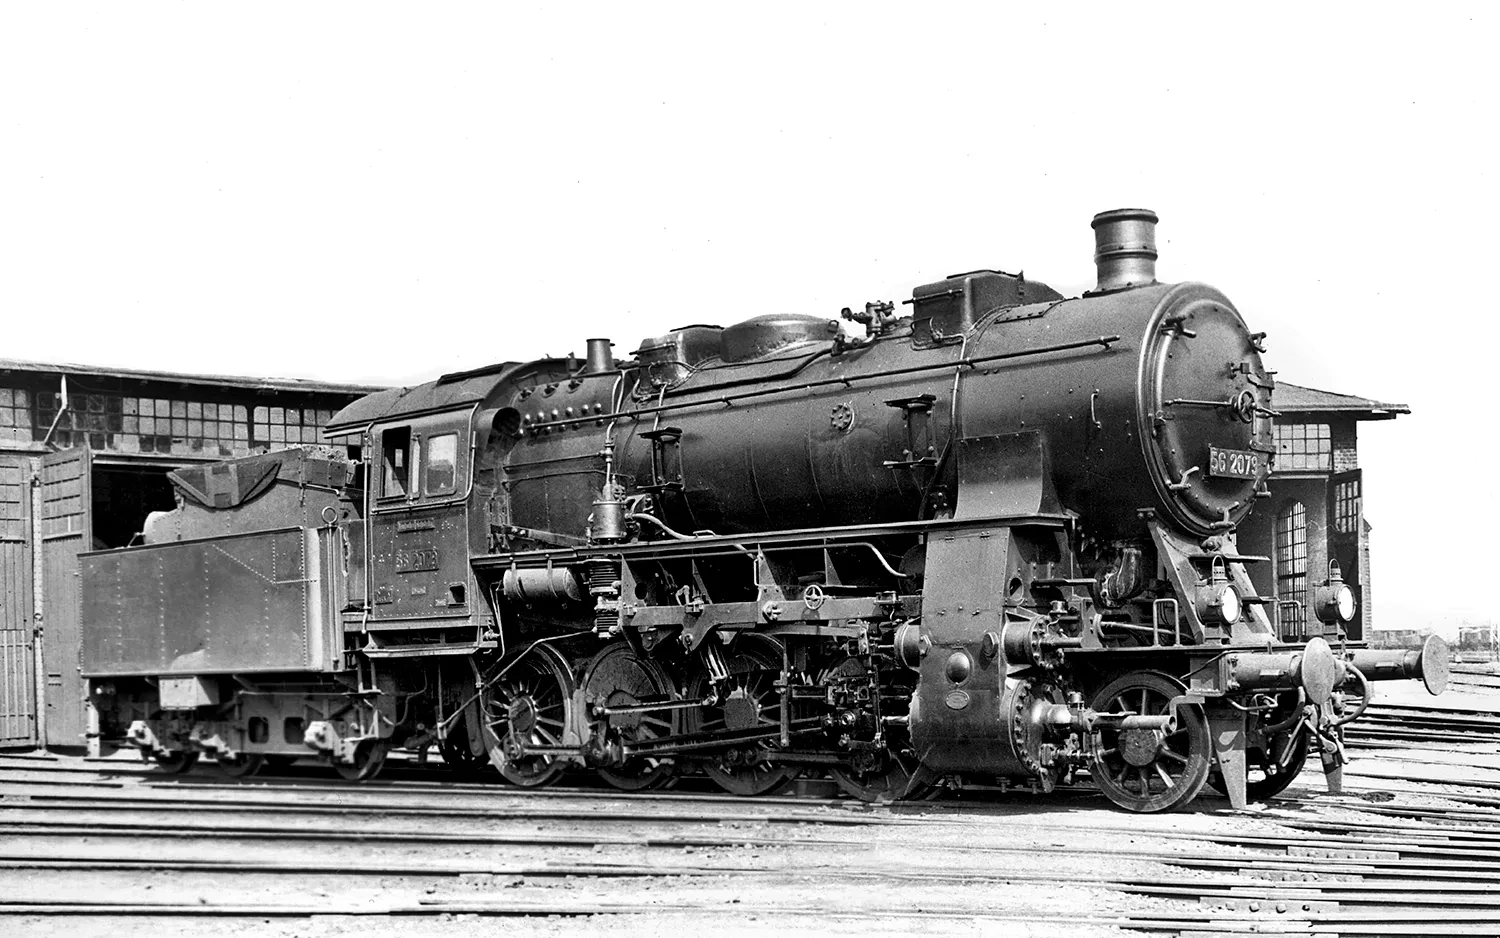 DRG, Dampflokomotive Baureihe 56.20, dreidomiger Kessel, in schwarz/roter Lackierung, Ep. II